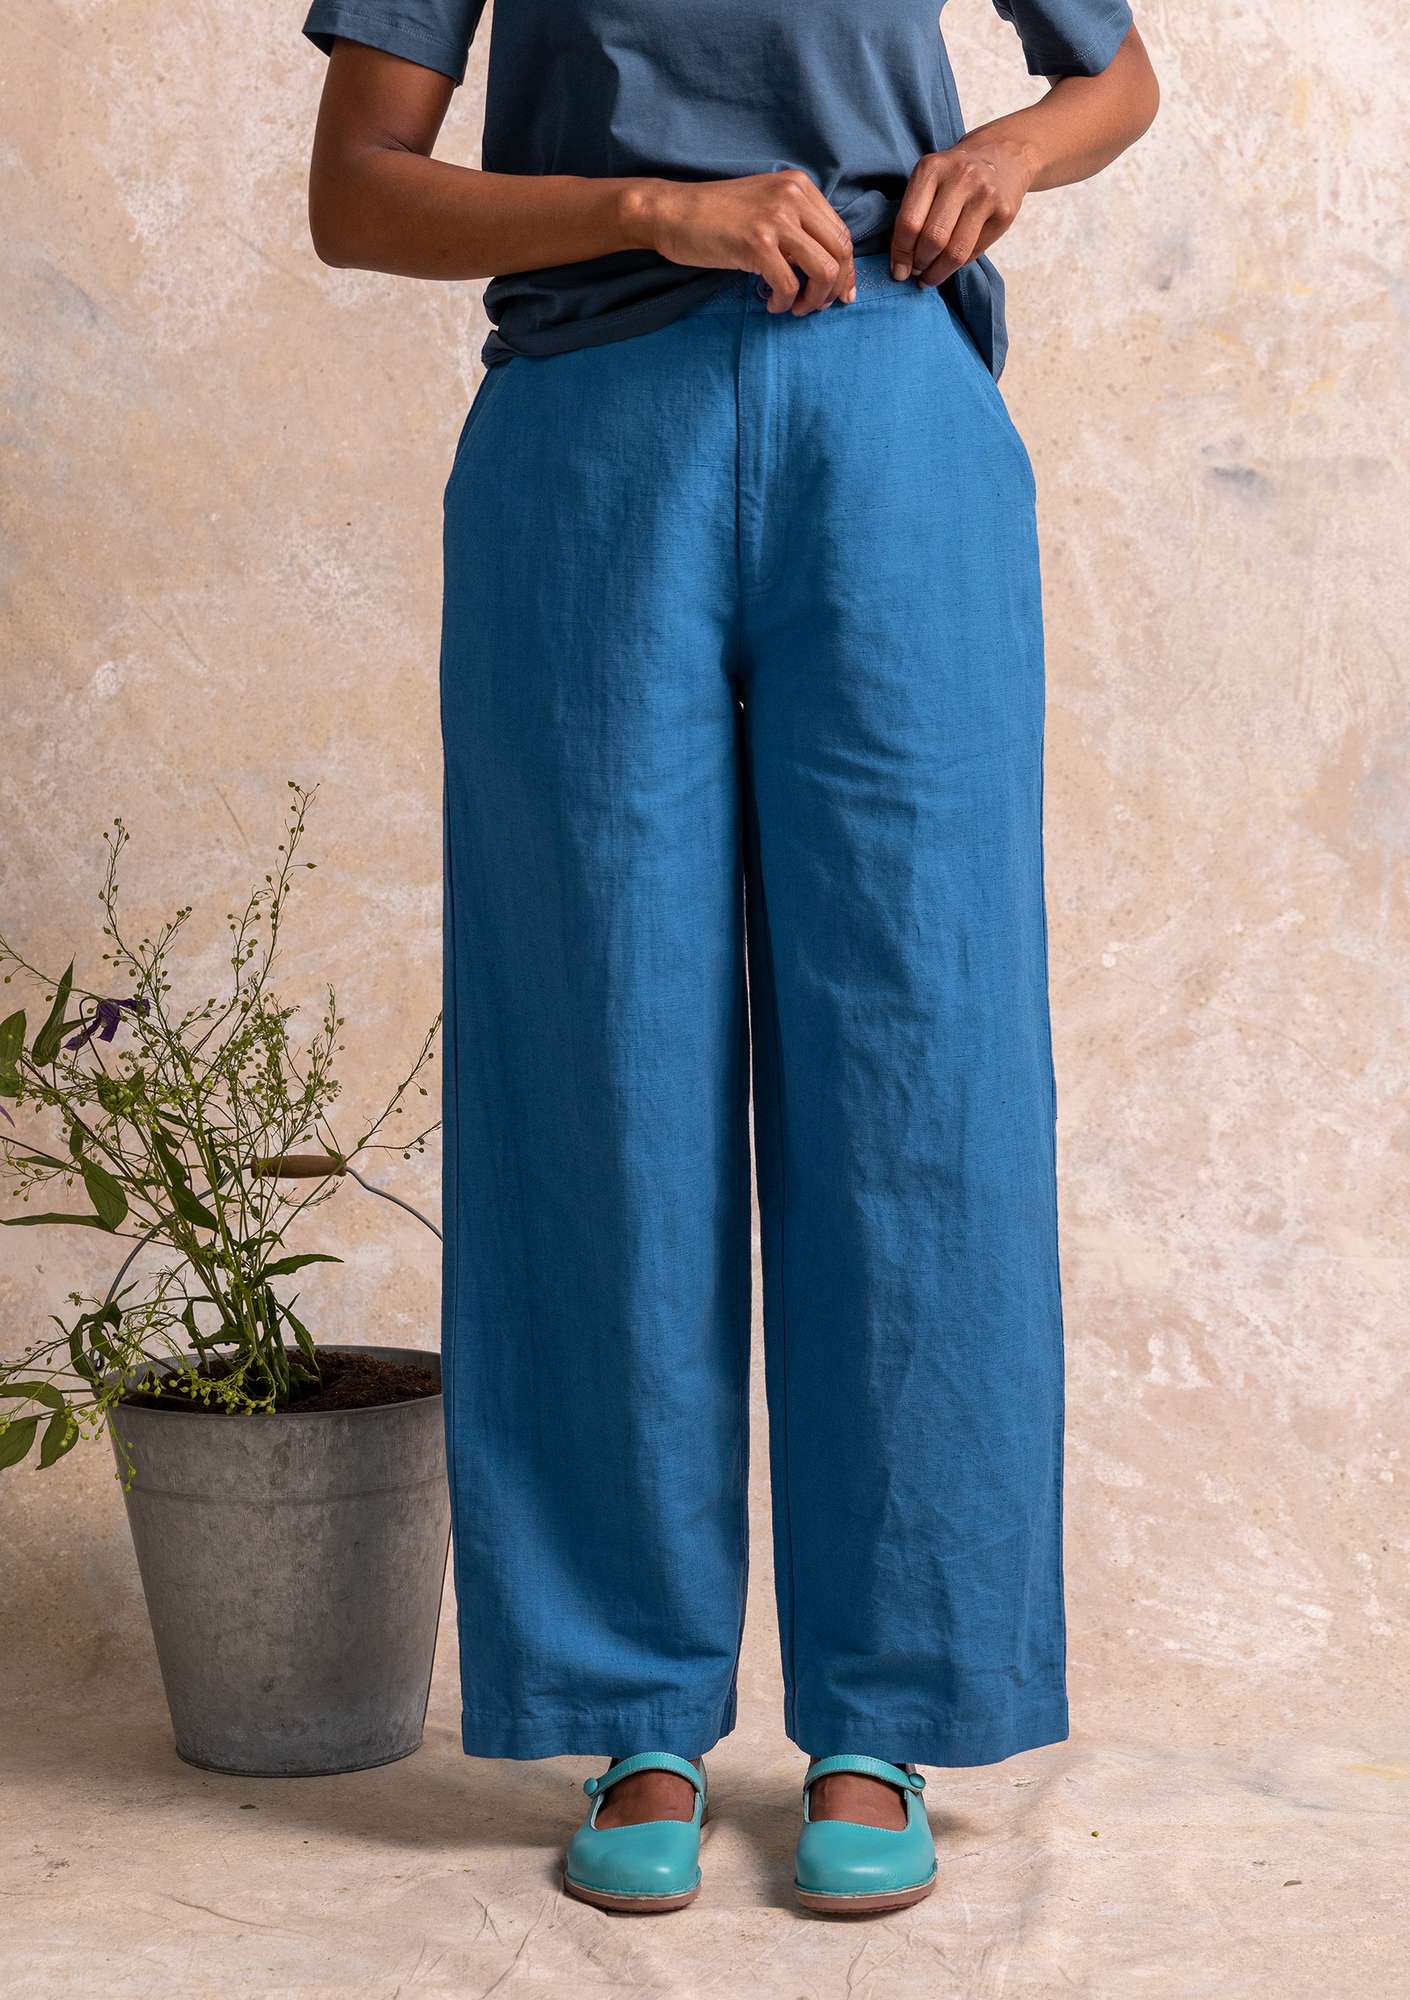 Vevd bukse i bomull/lin flax blue